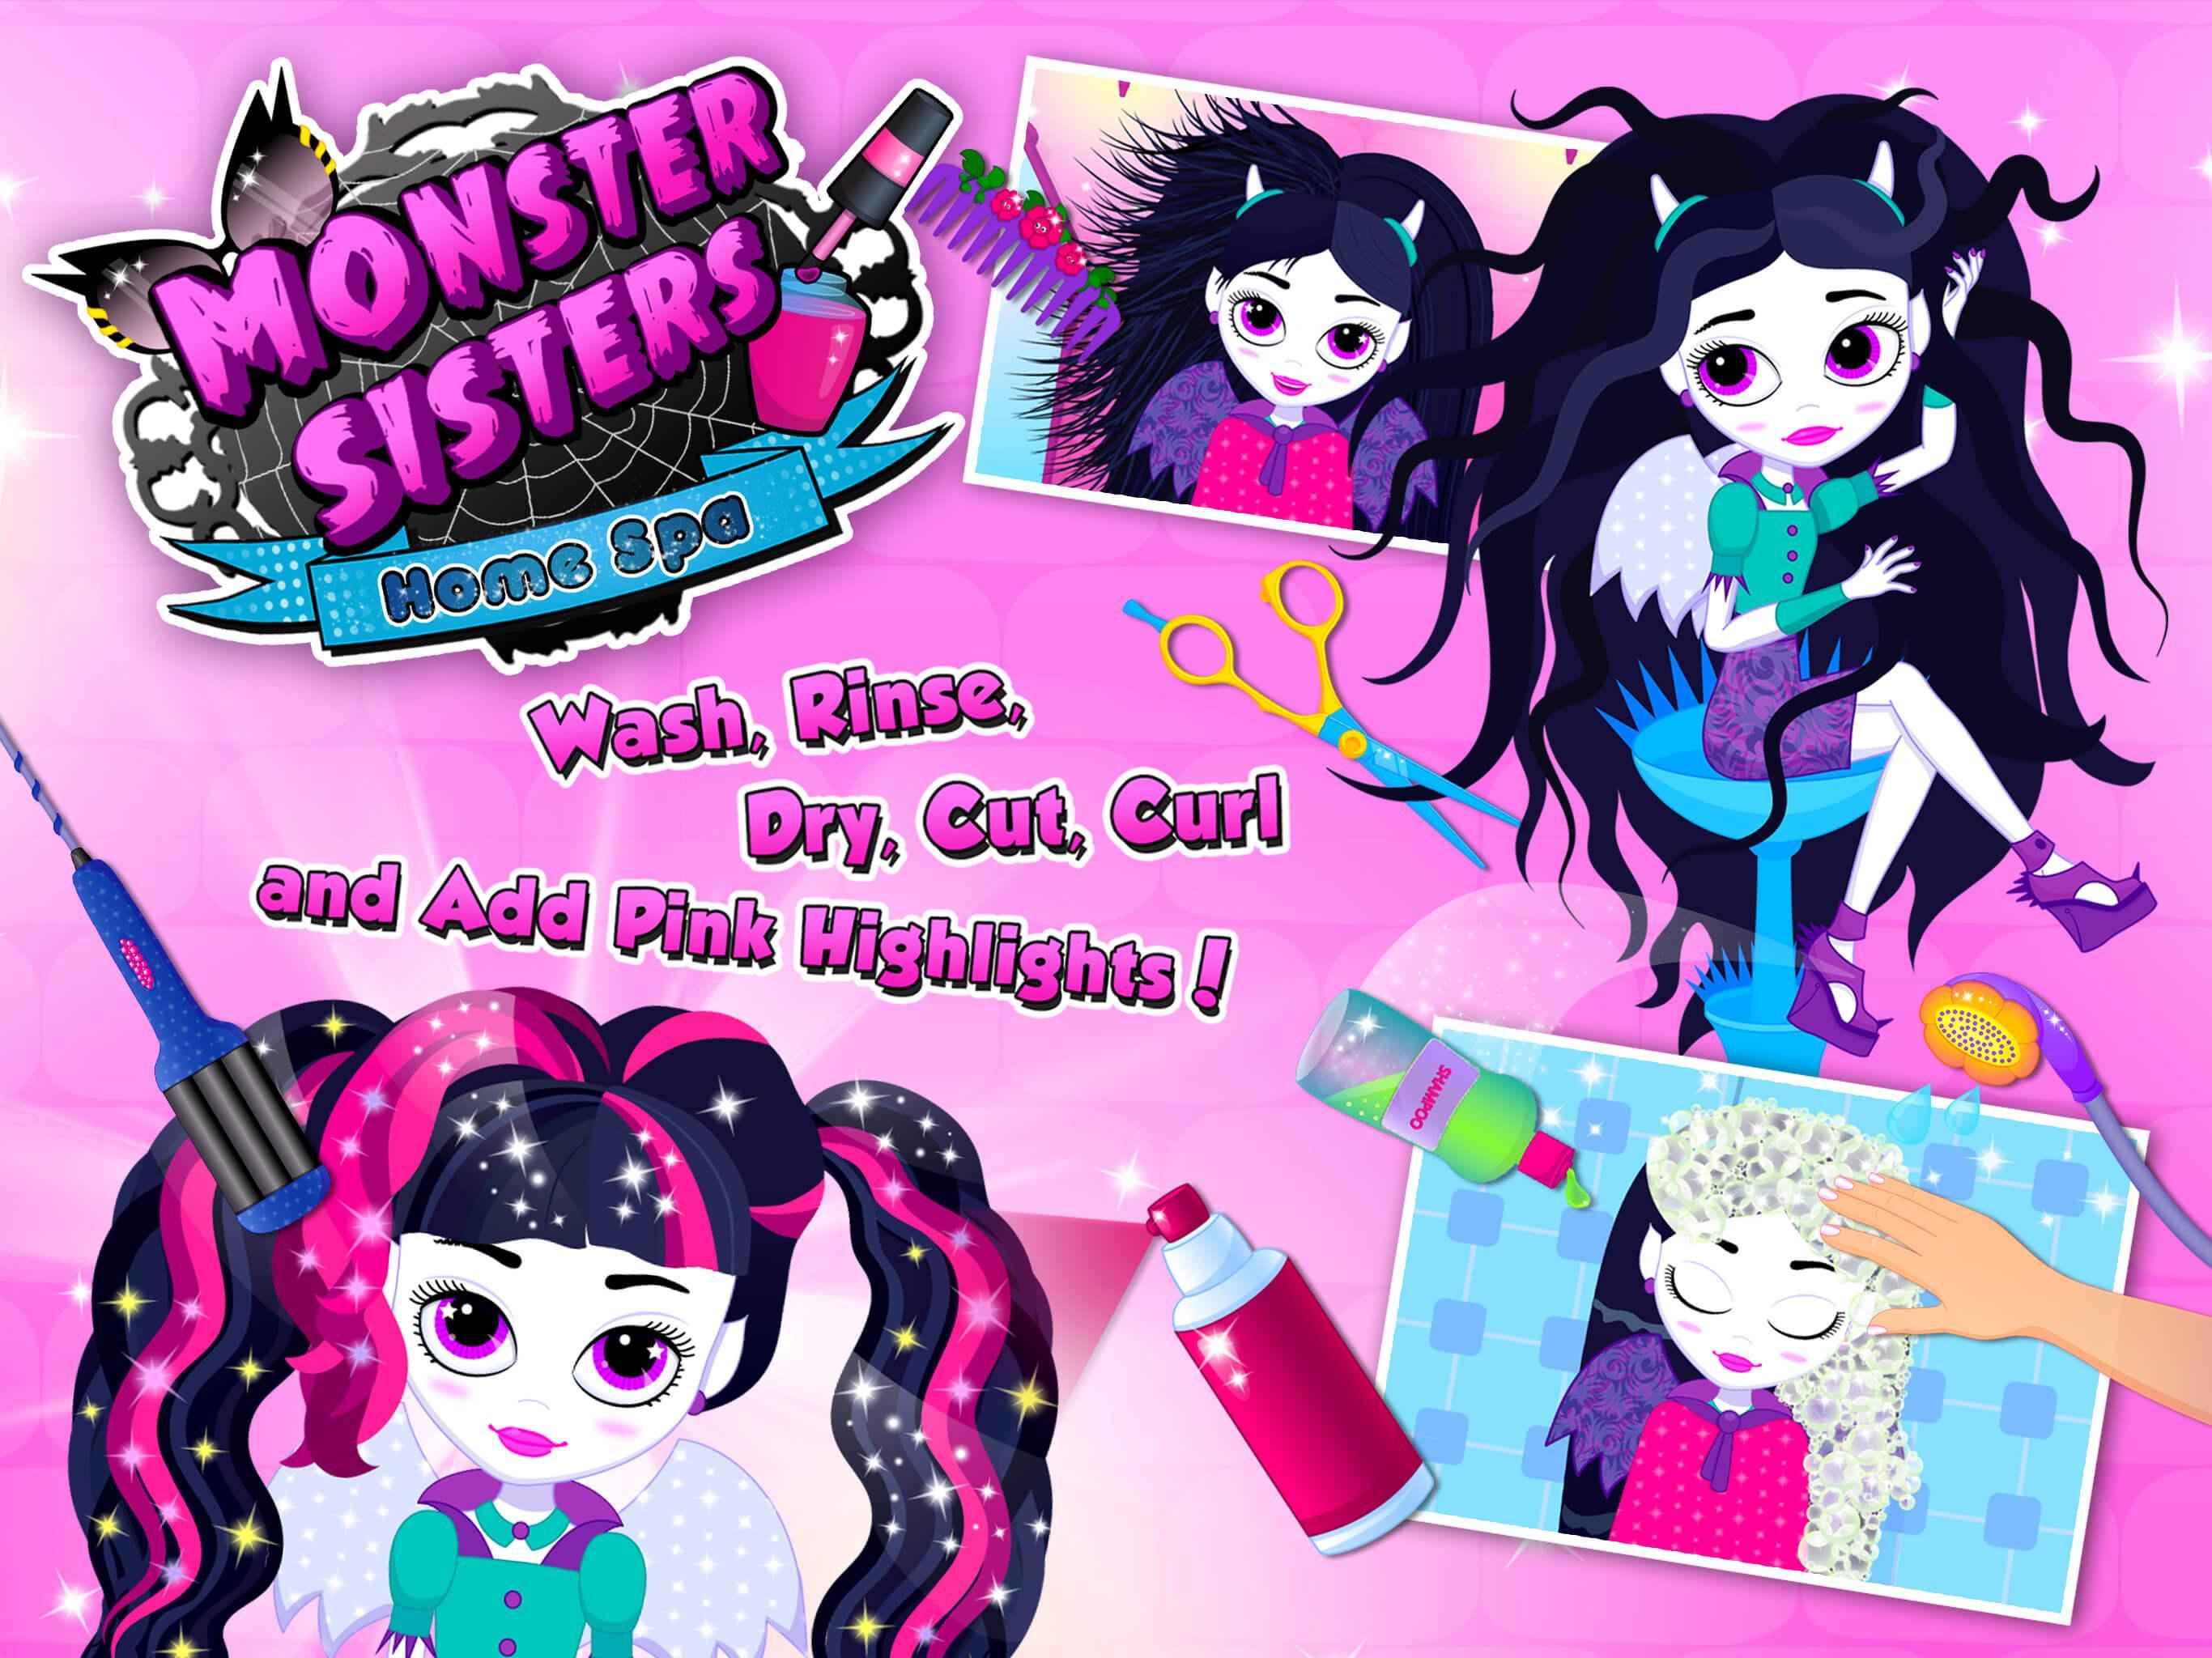 Monster Sisters 2 Home Spa遊戲截圖